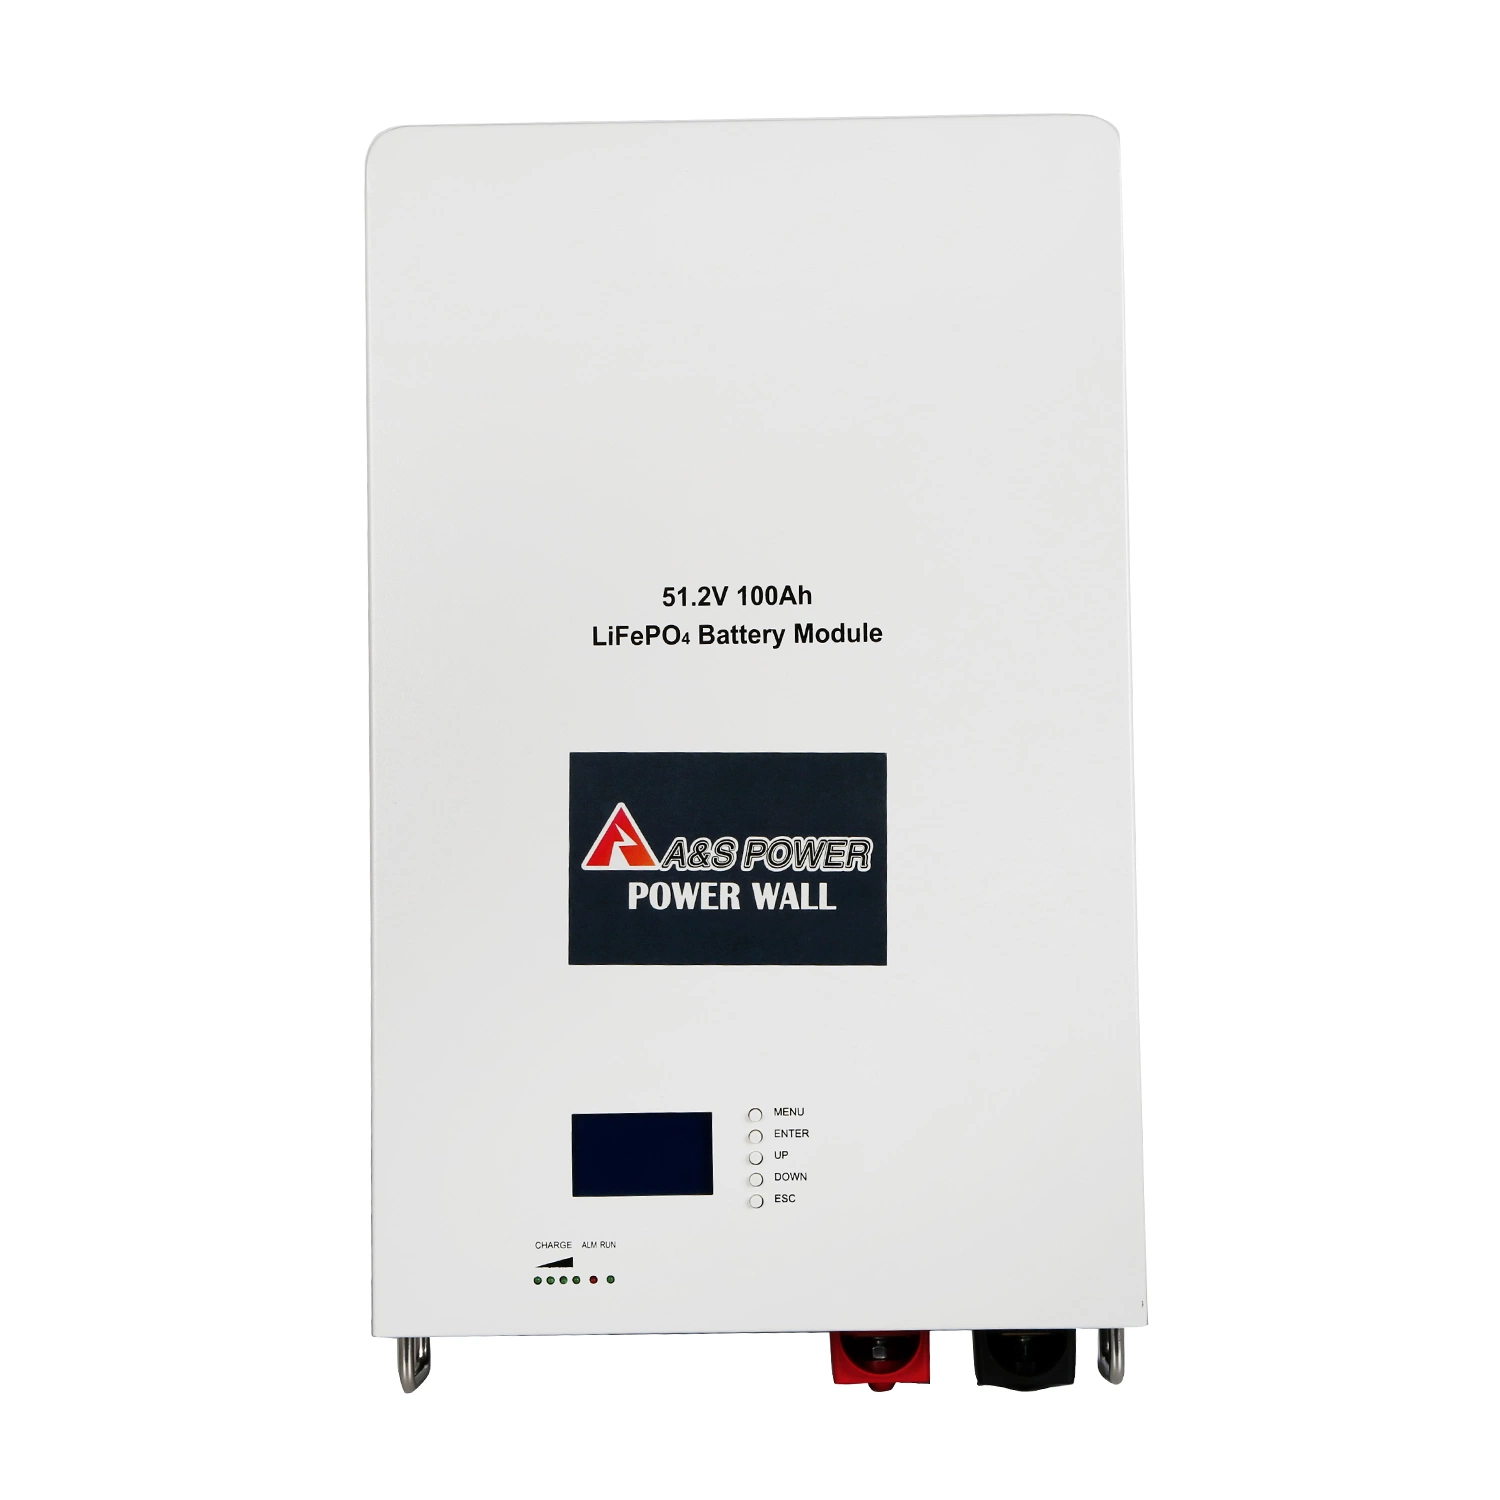 Lithium-Ionen-Akku Power Wall 51,2V 100Ah LiFePO4 für zu Hause Anwendung mit BMS